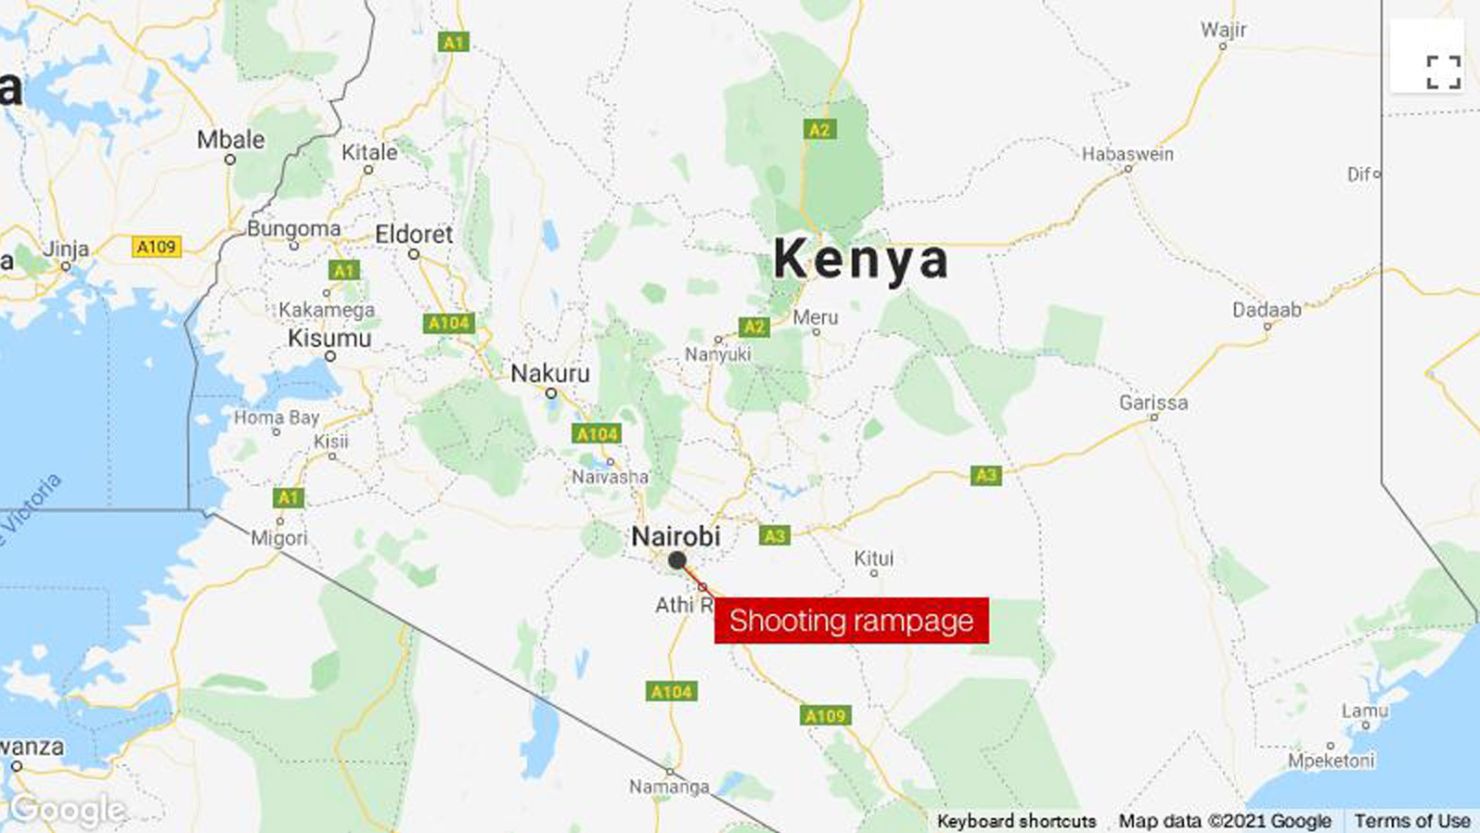 Nairobi Kenya shooting rampage MAP